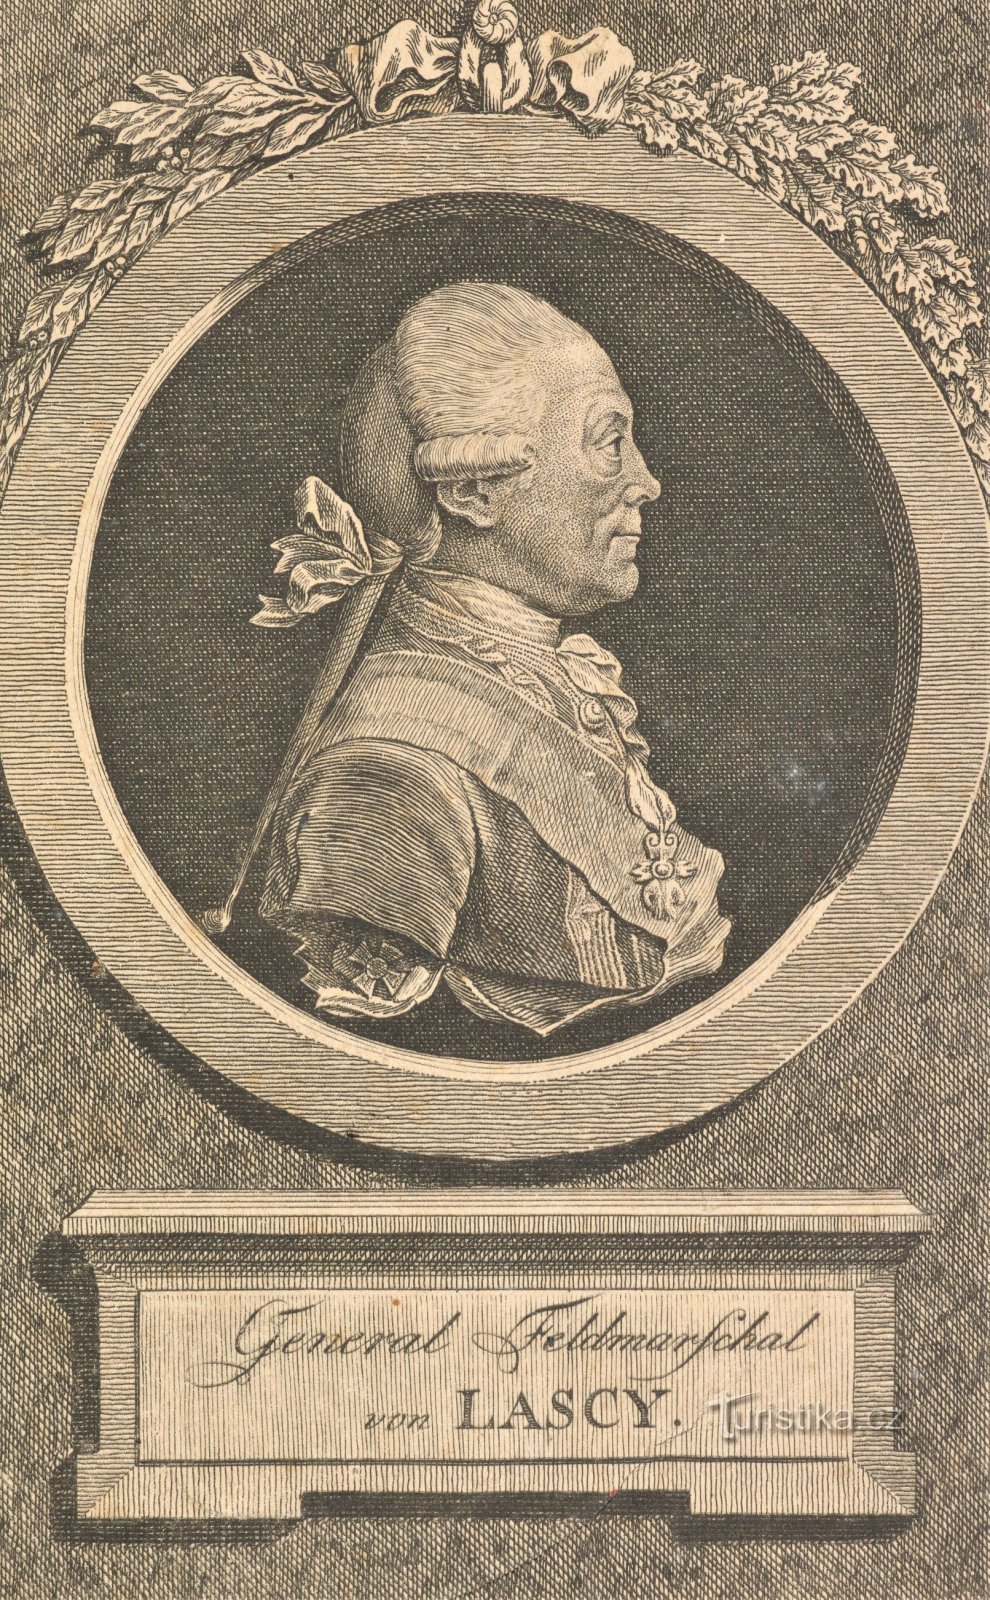 Portret generala Lacyja iz razdoblja